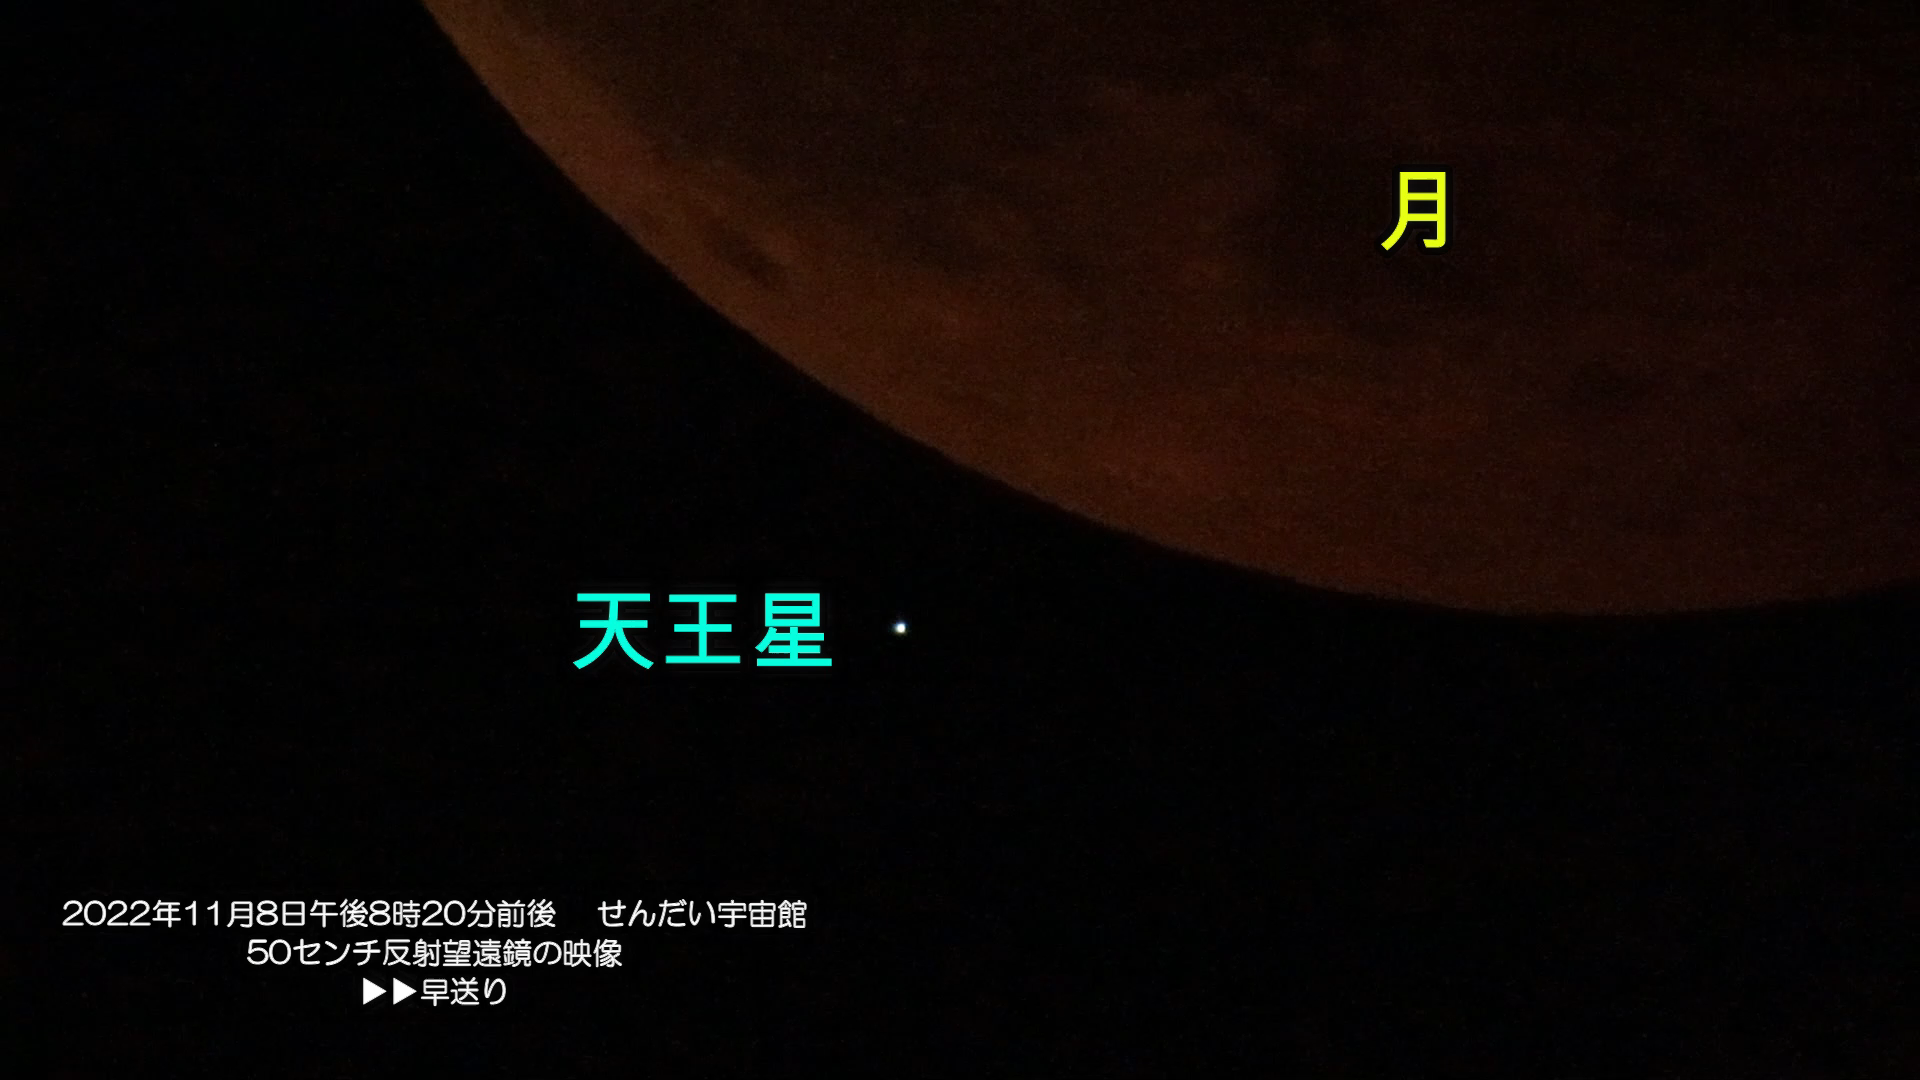 『天王星食(動画)』(2022年11月8日)